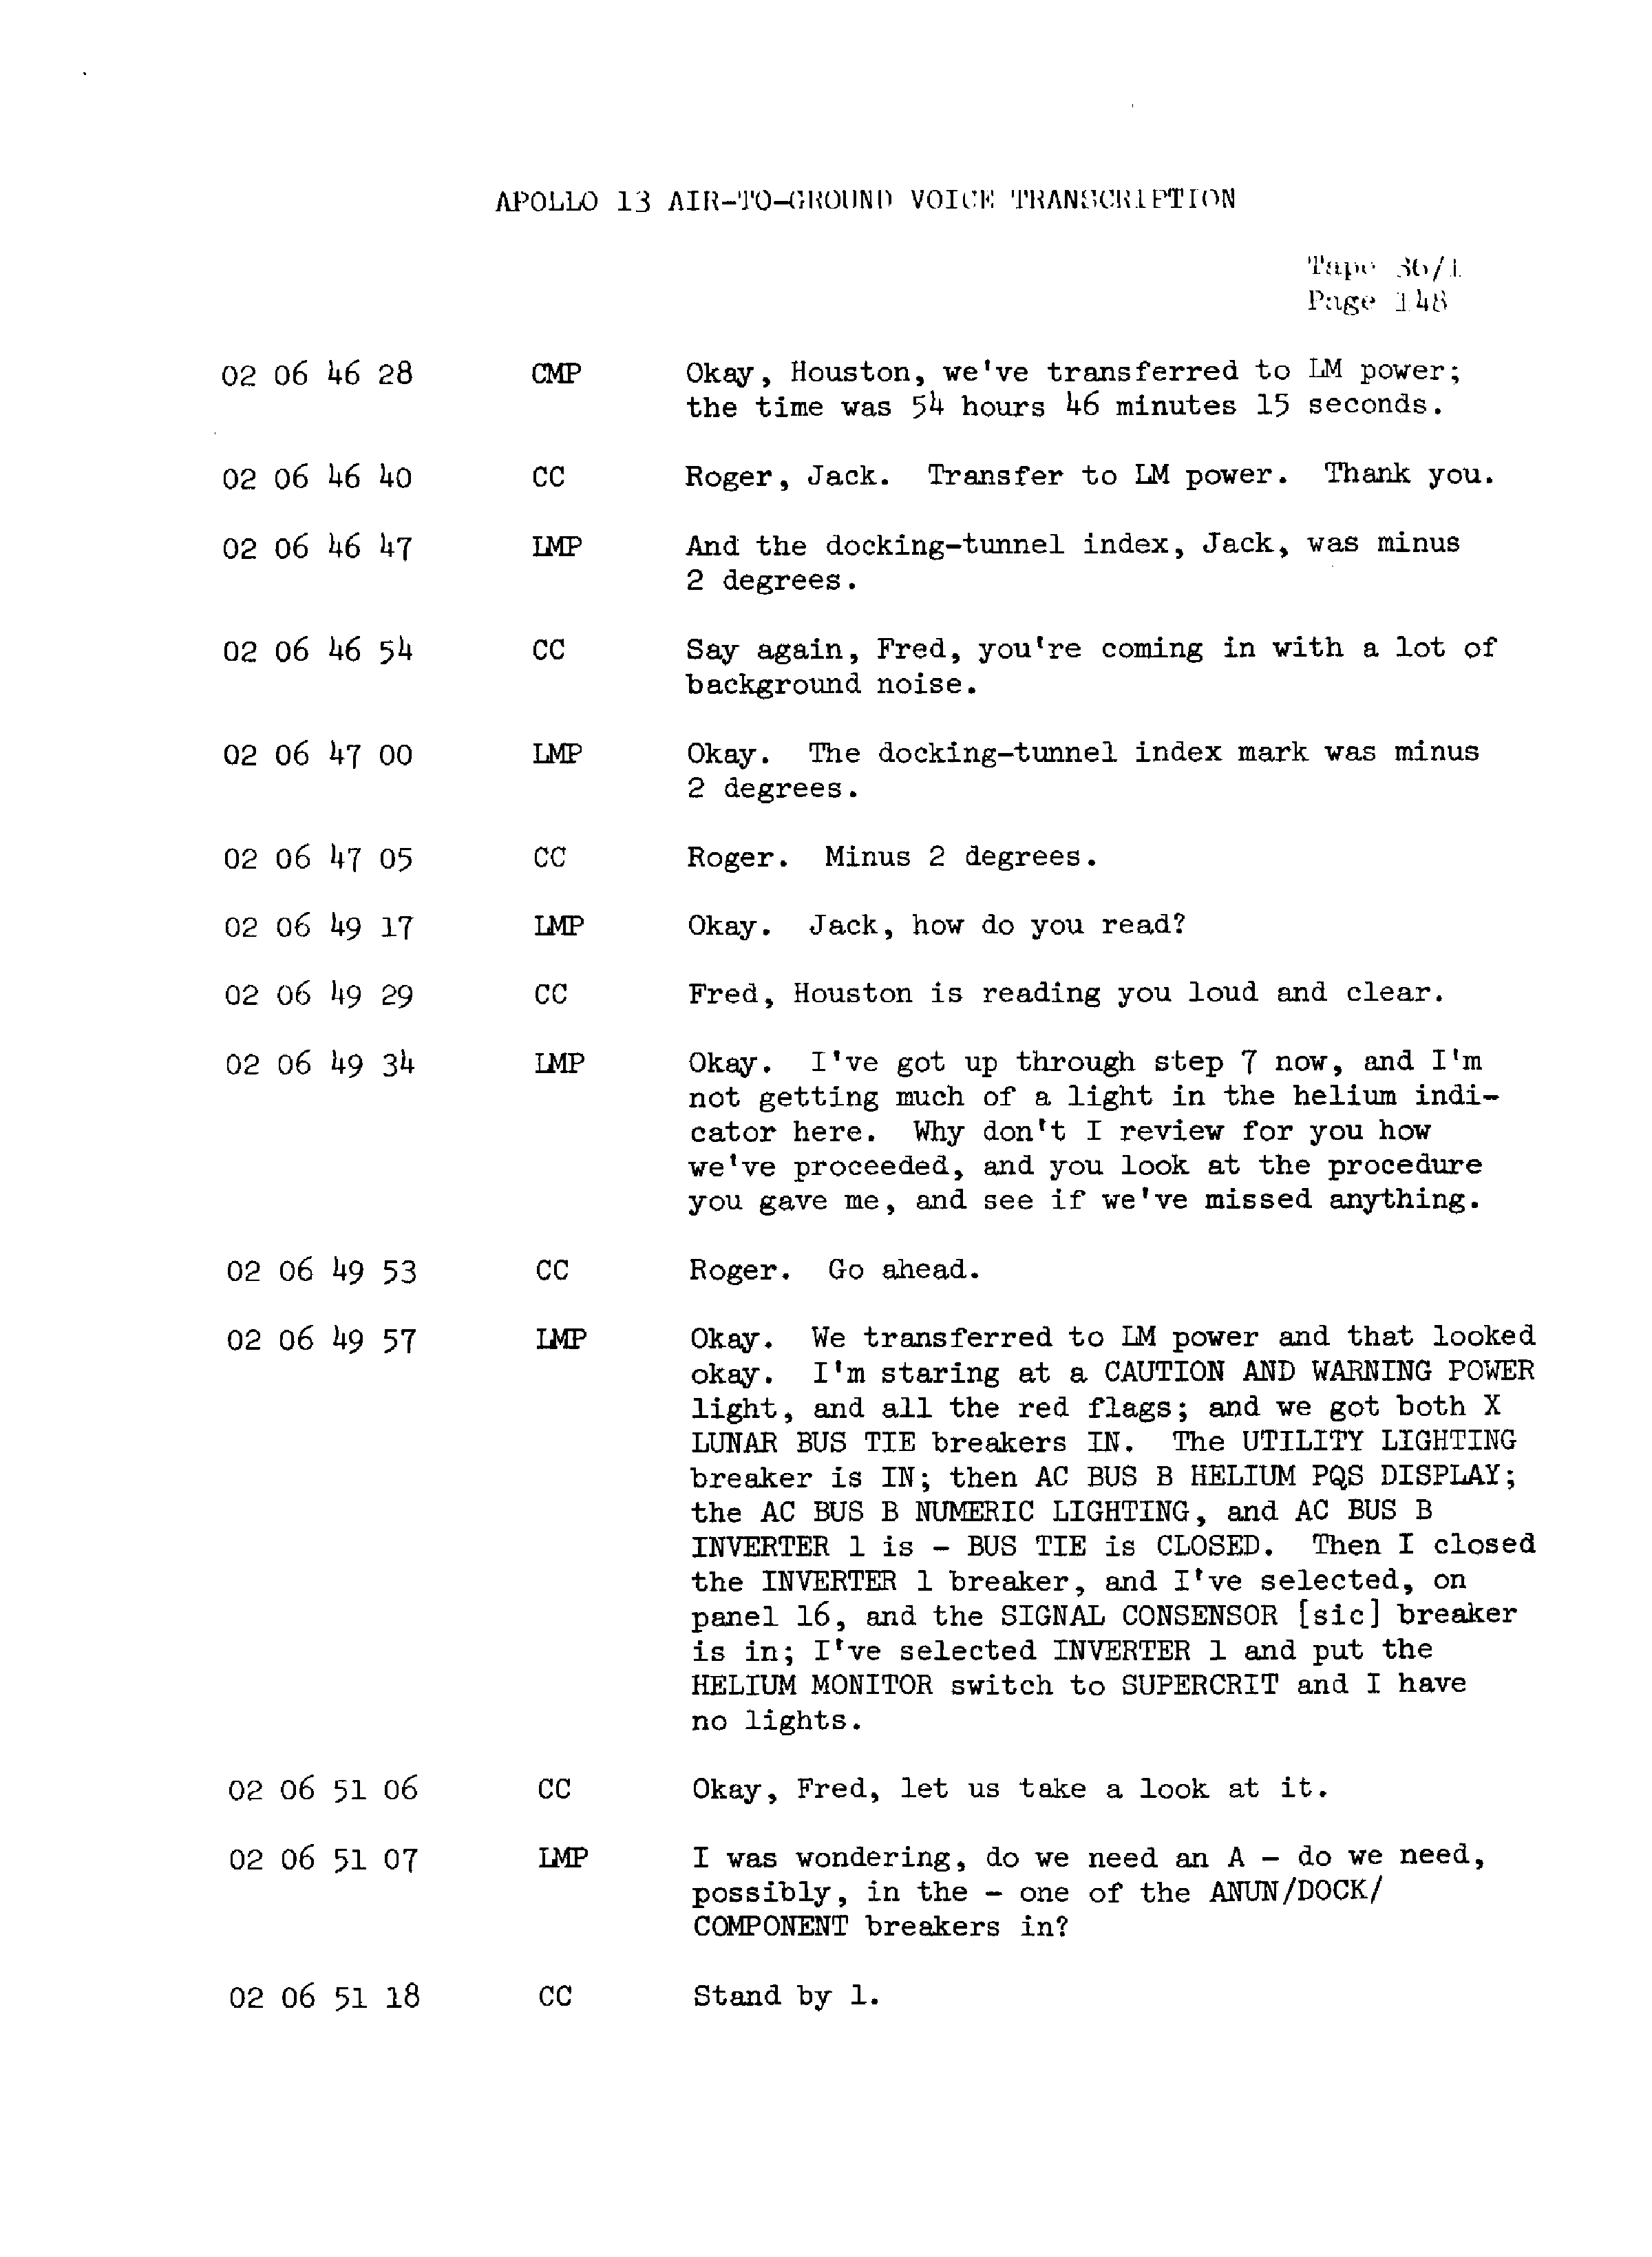 Page 155 of Apollo 13’s original transcript